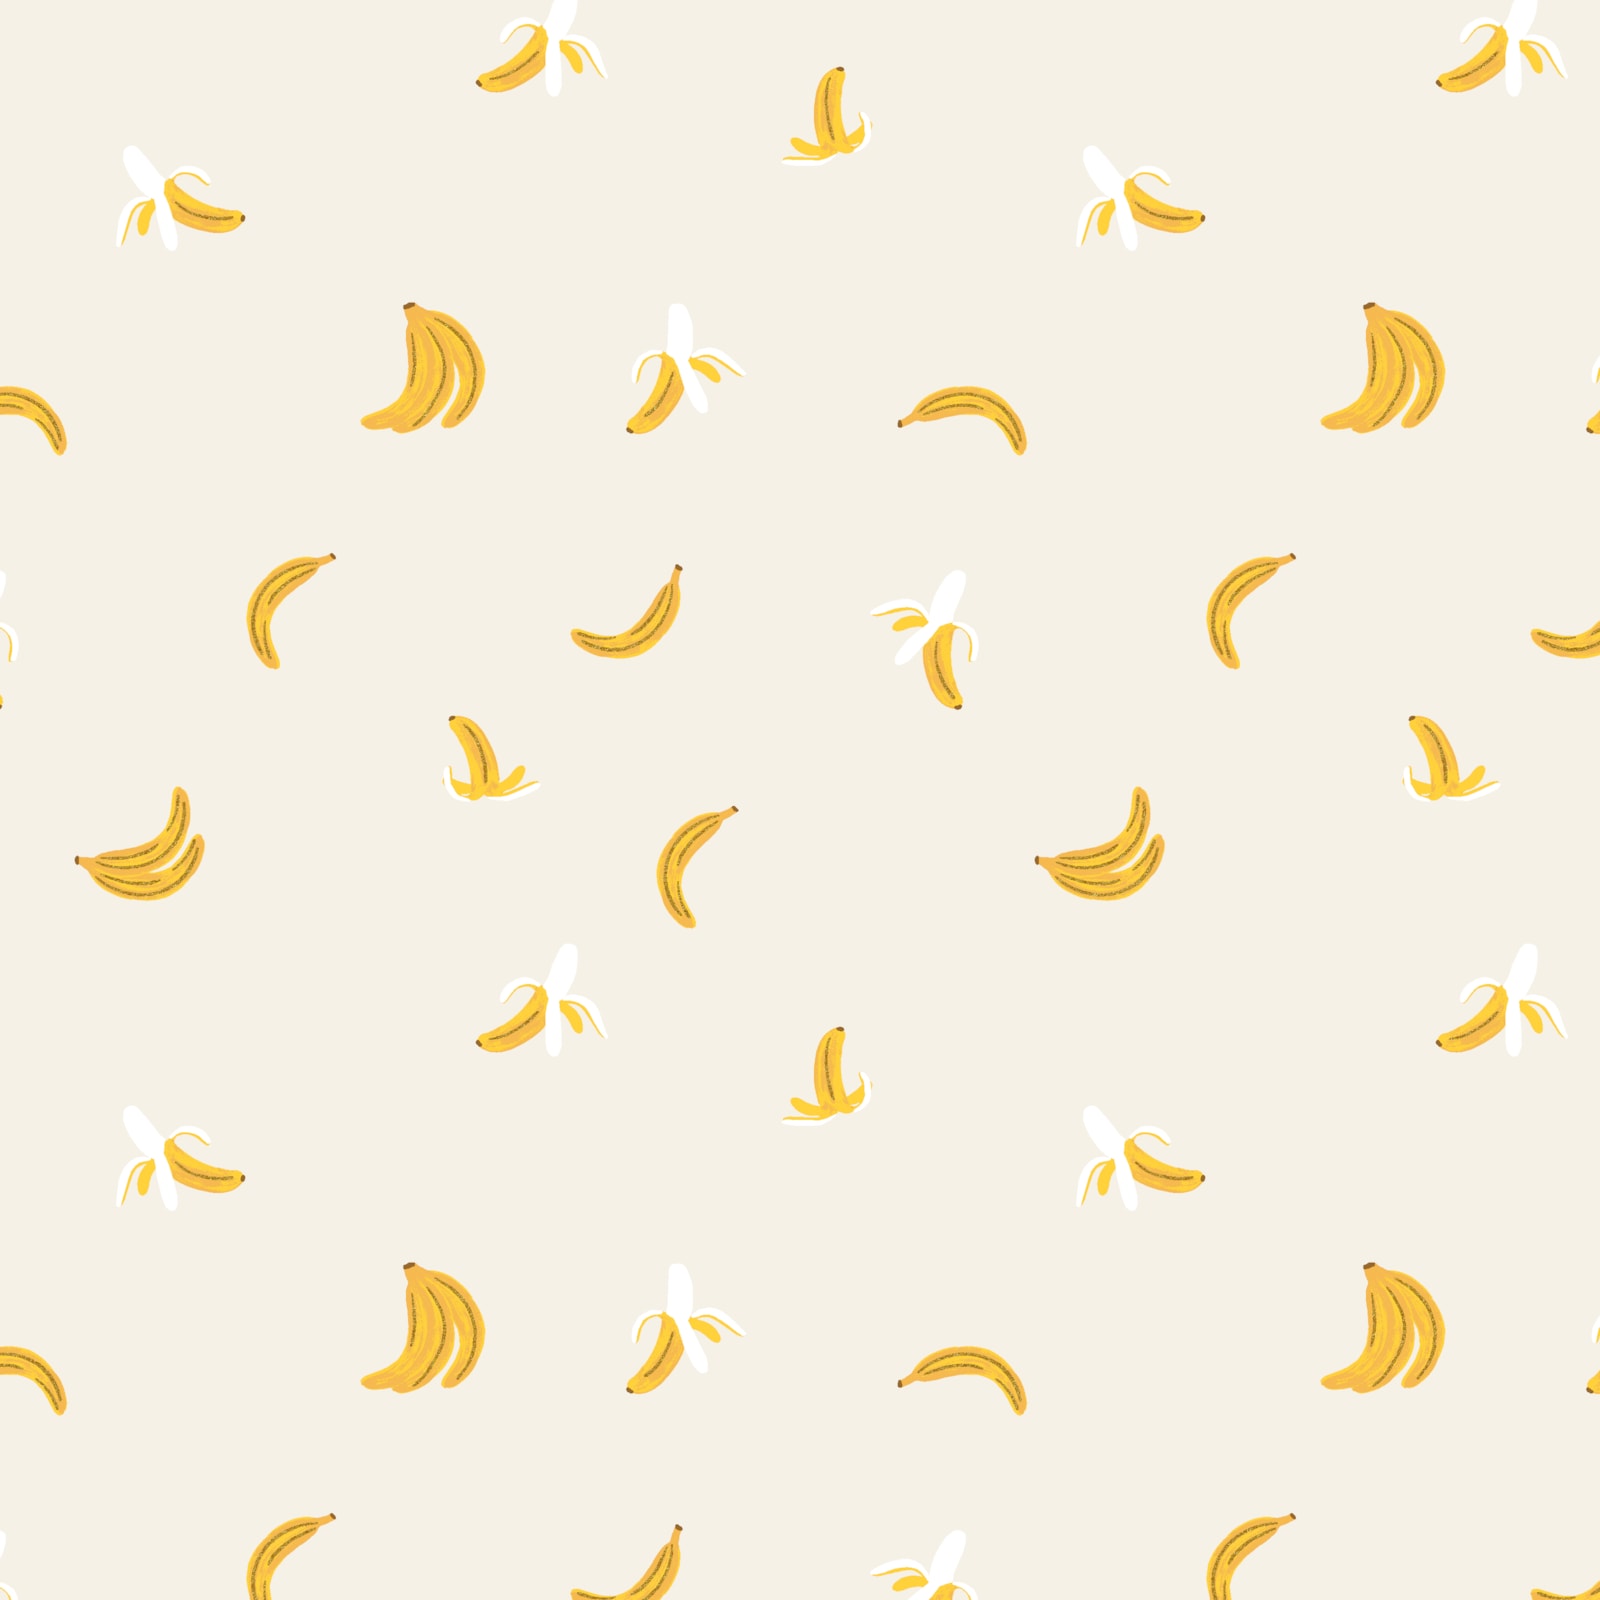 Orchard Bananas